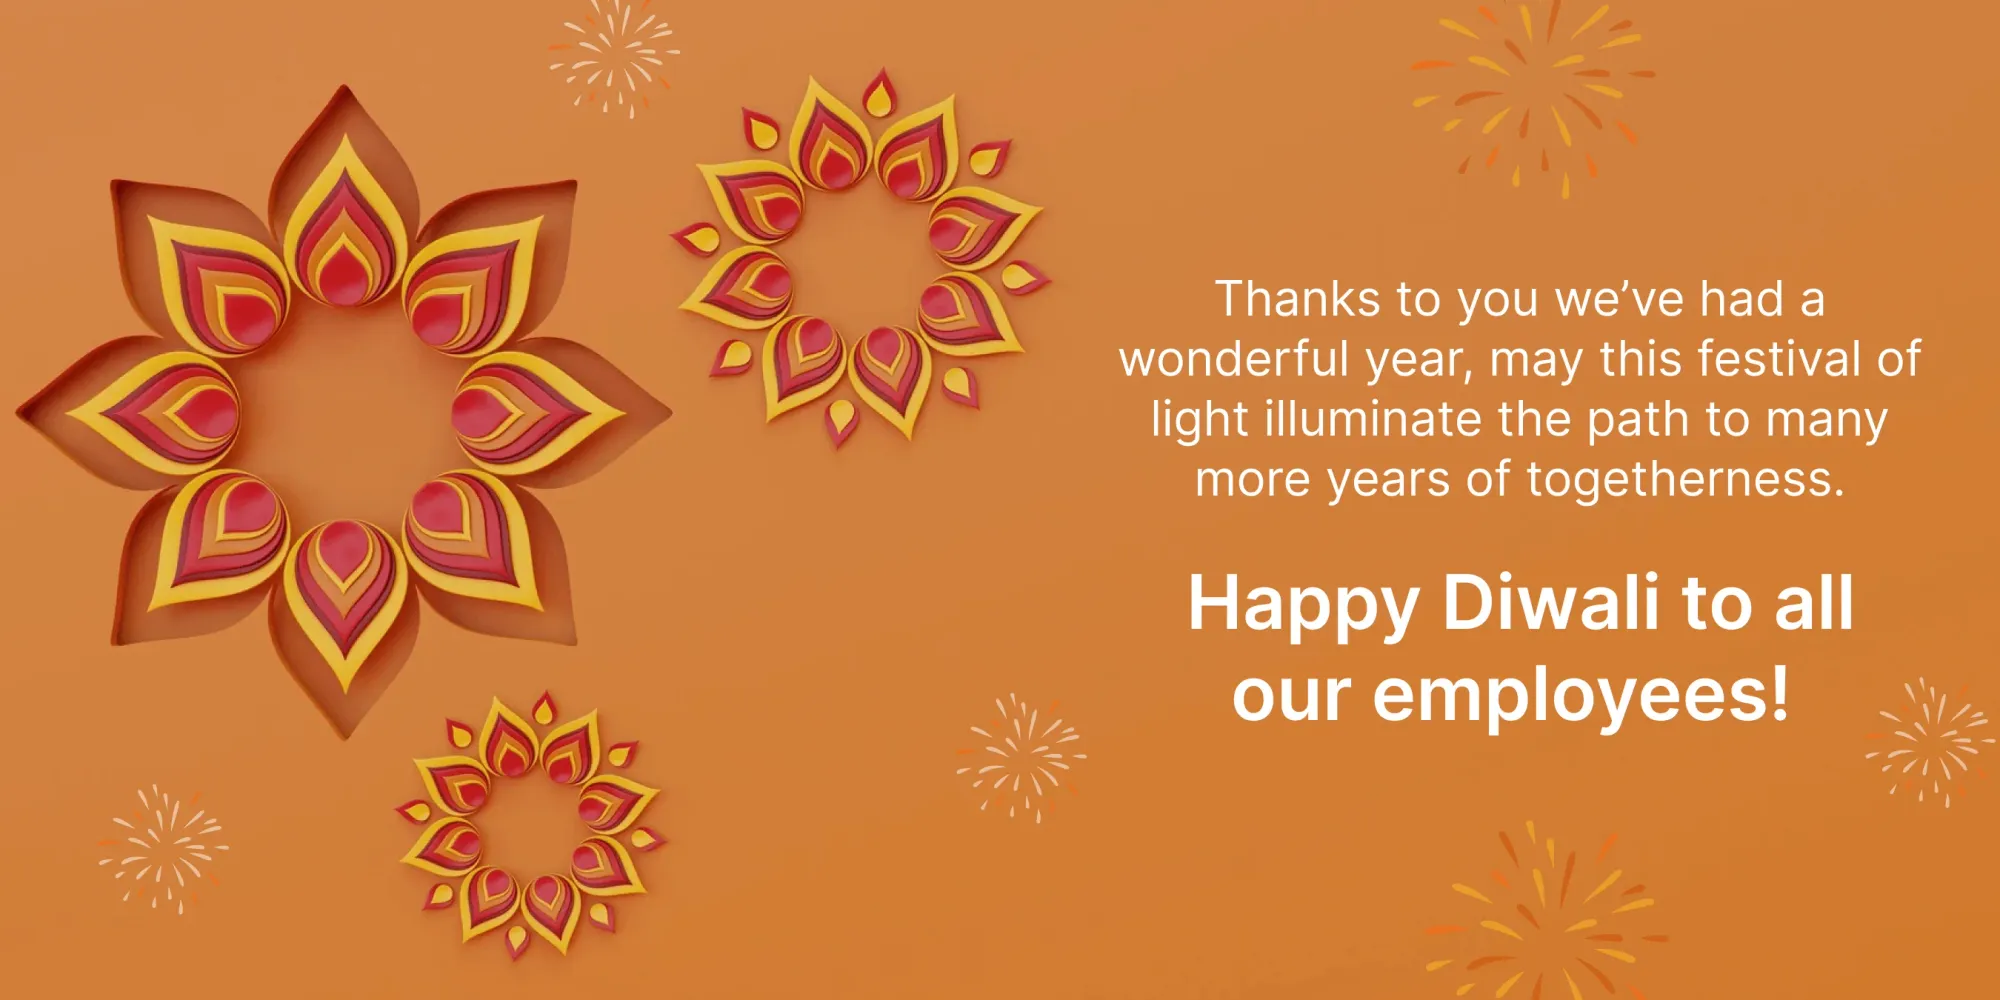 Einzigartige Diwali-Wünsche für Mitarbeiter